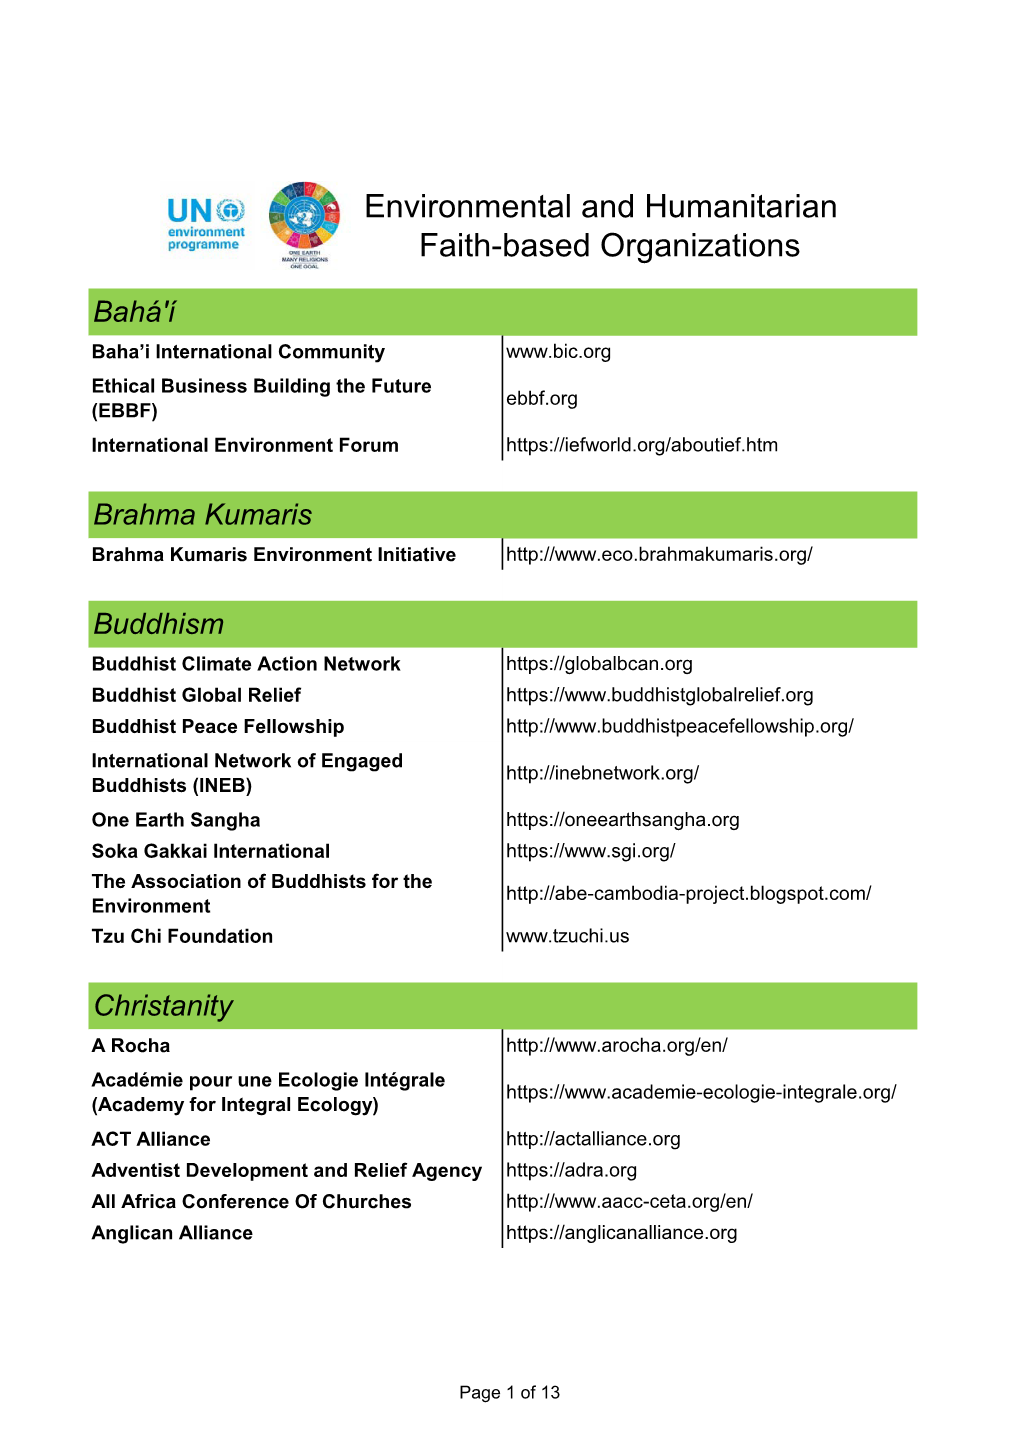 Environmental and Humanitarian Faith-Based Organizations